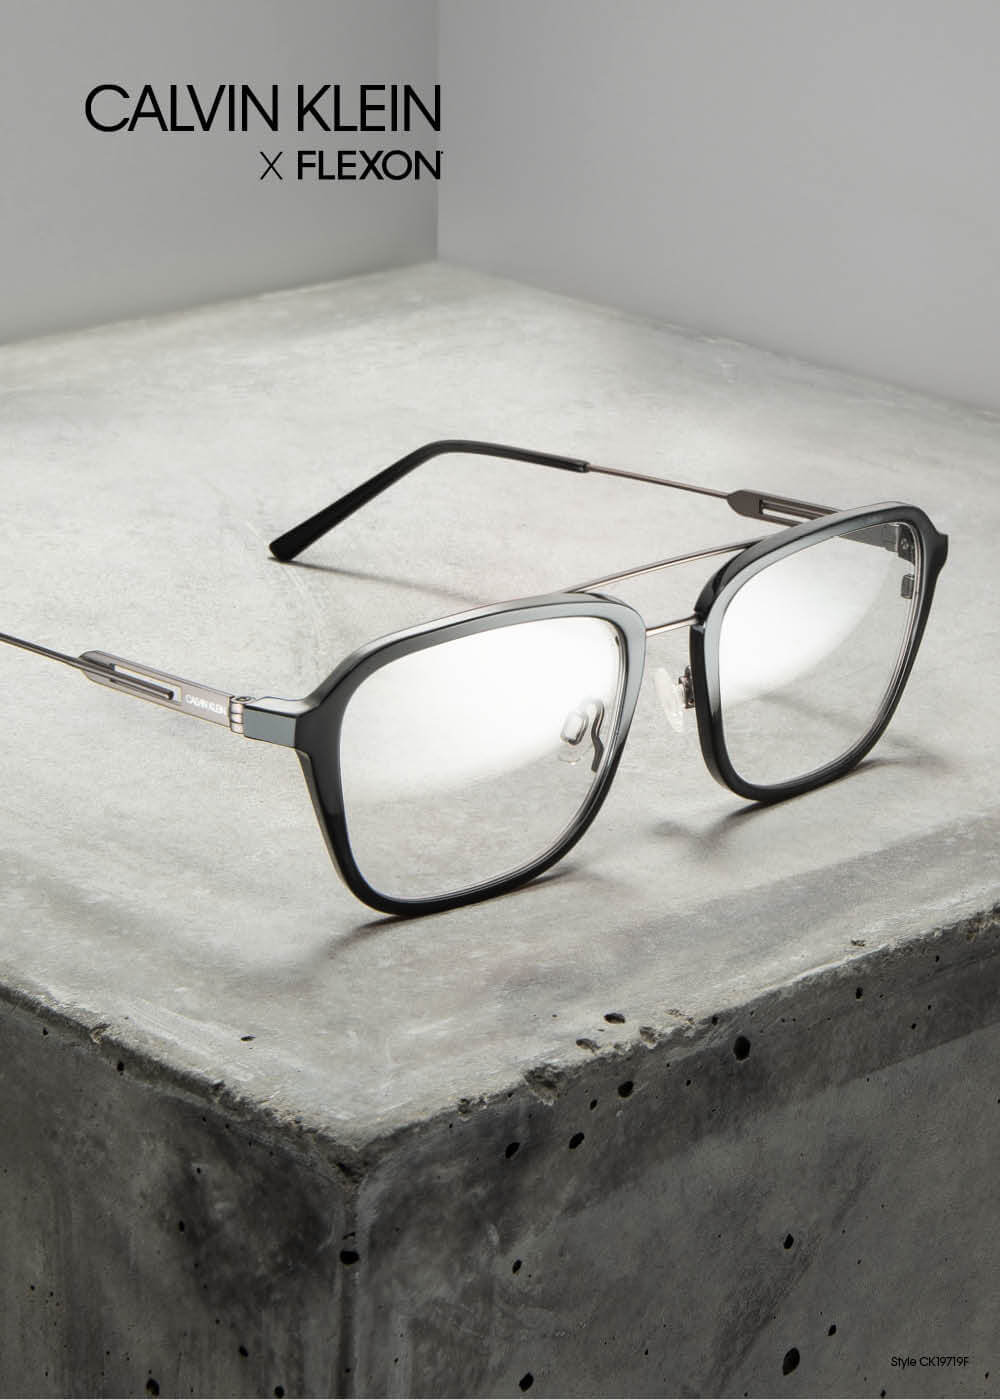 Modernidad e innovación la nueva colección Calvin Klein eyewear - Optimoda